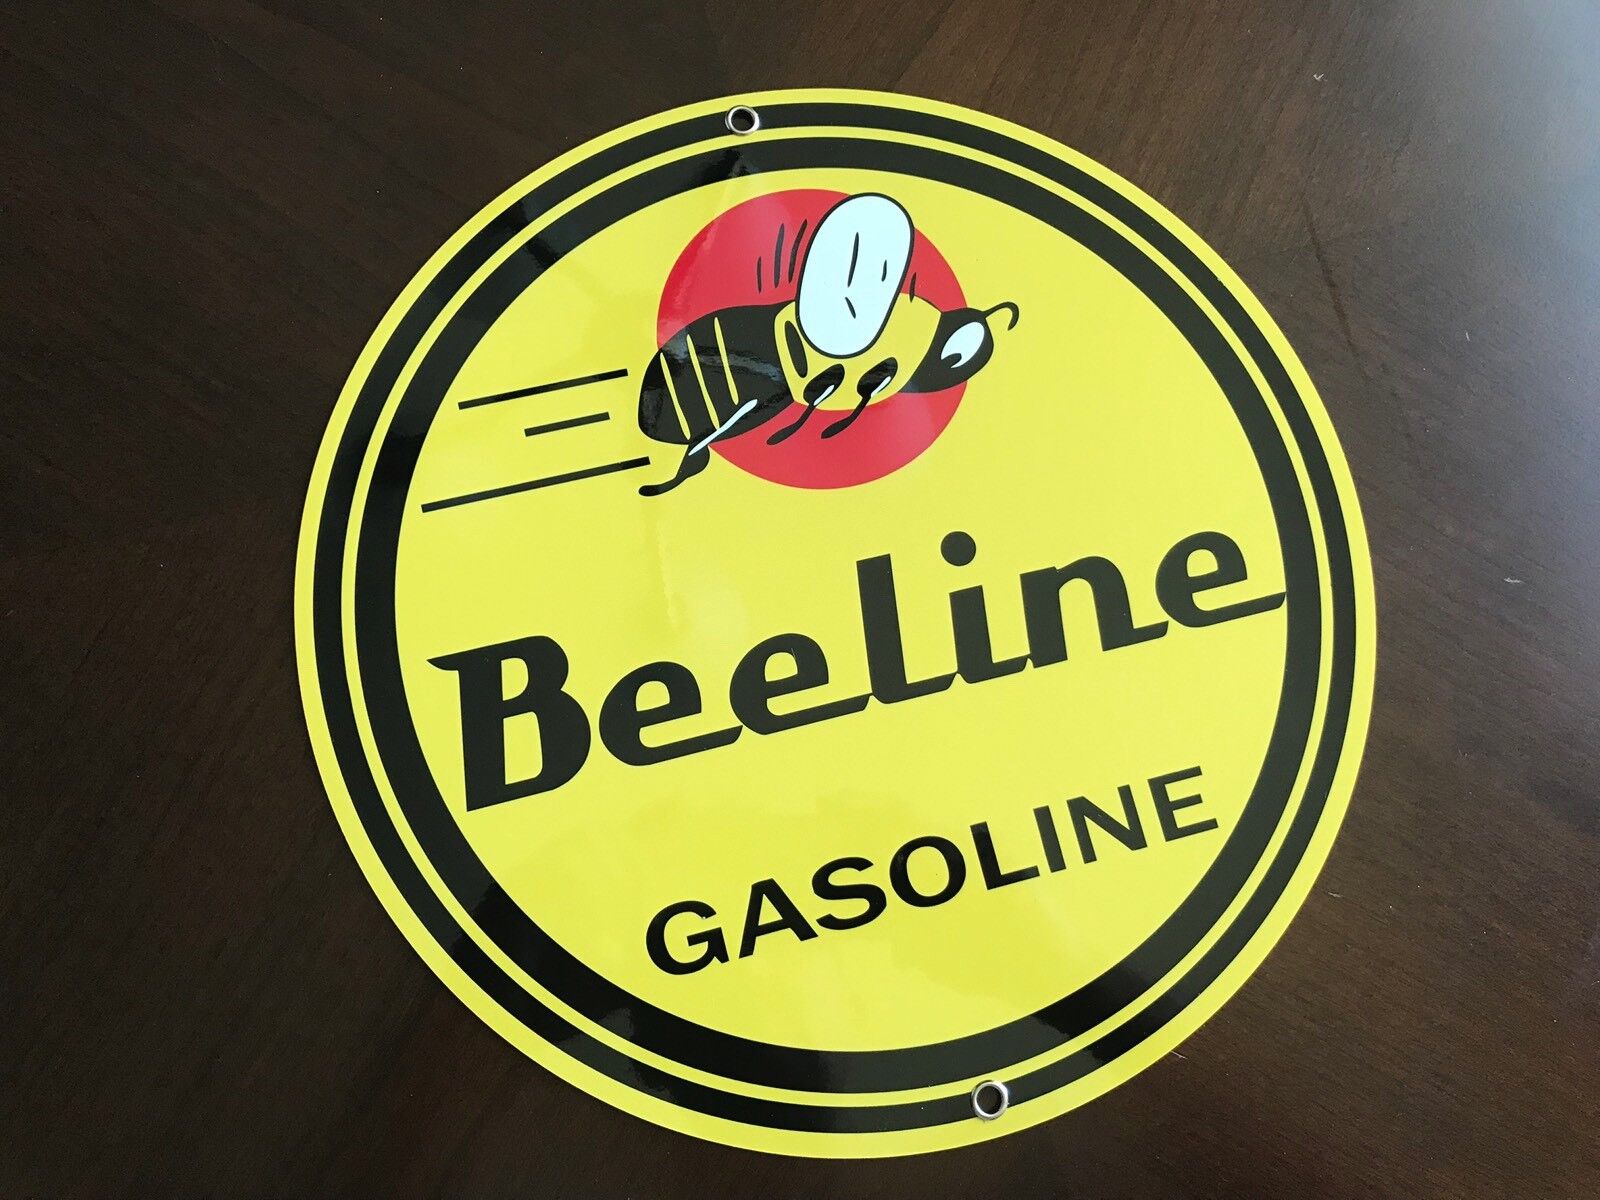 Beeline gasoline garage man cave  vintage sign baked